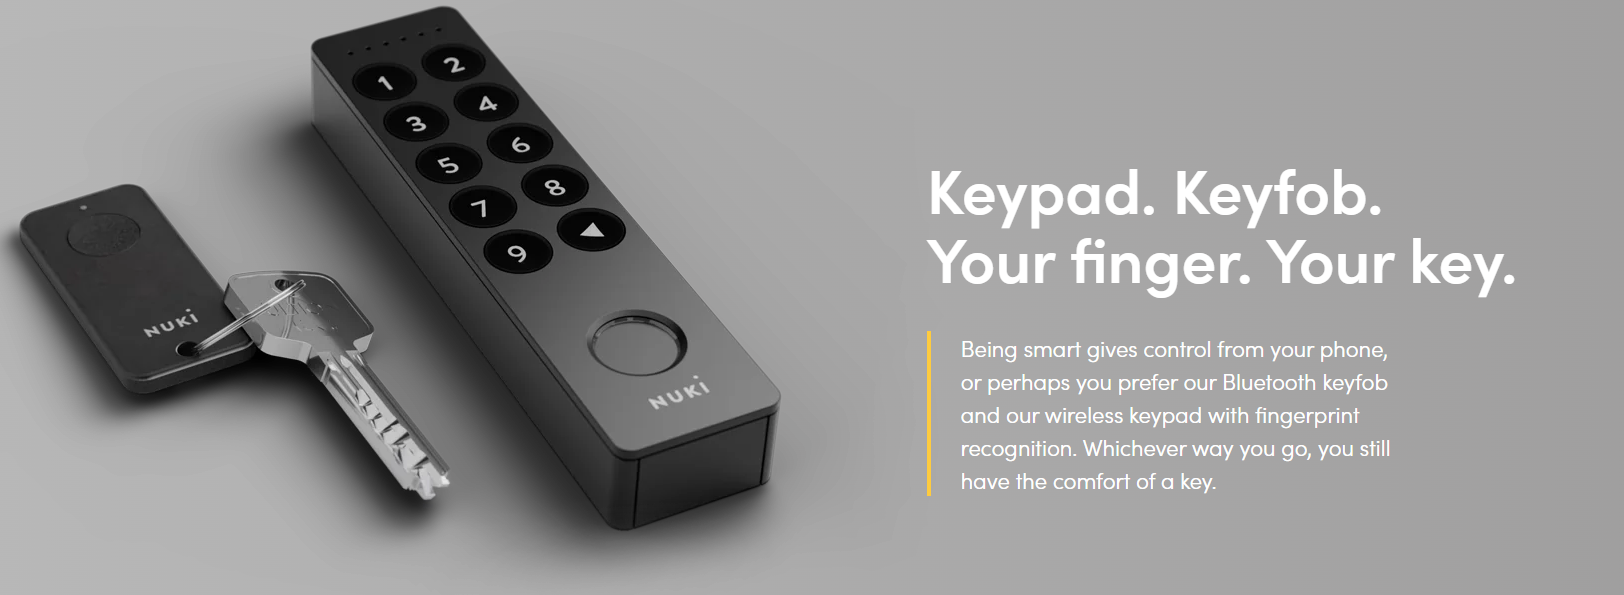 Nuki Keypad - Simply for everyone. - Nuki